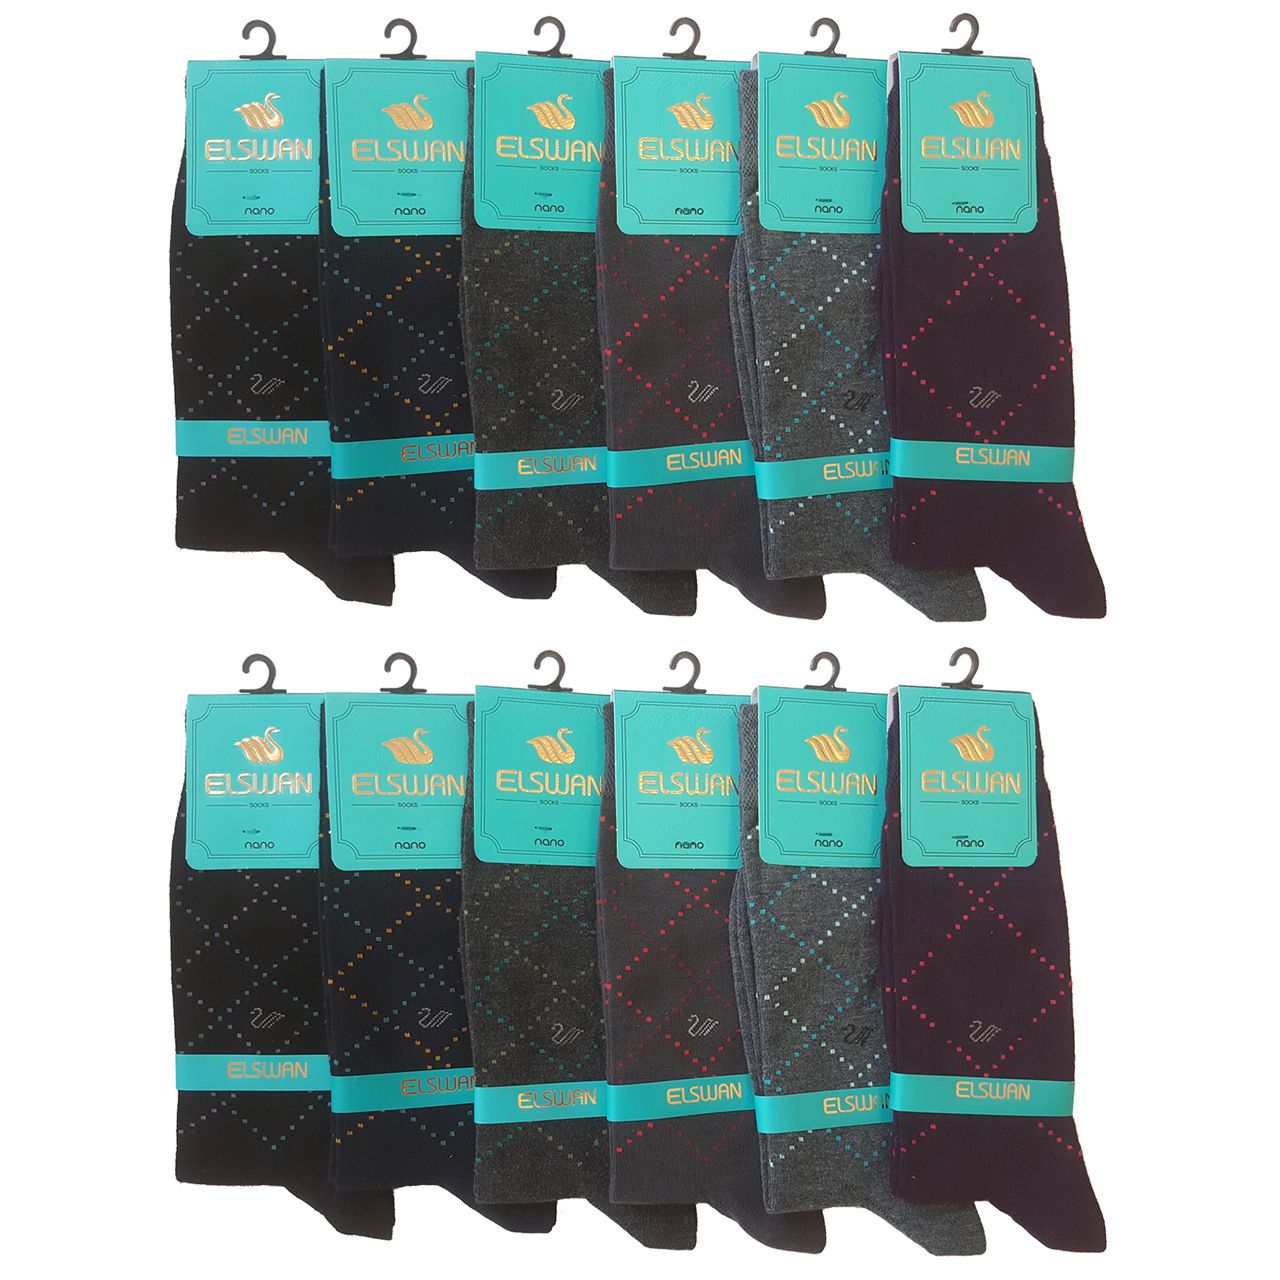 جوراب مردانه ال سون طرح ونیز کد PH52 مجموعه 12 عددی -  - 1